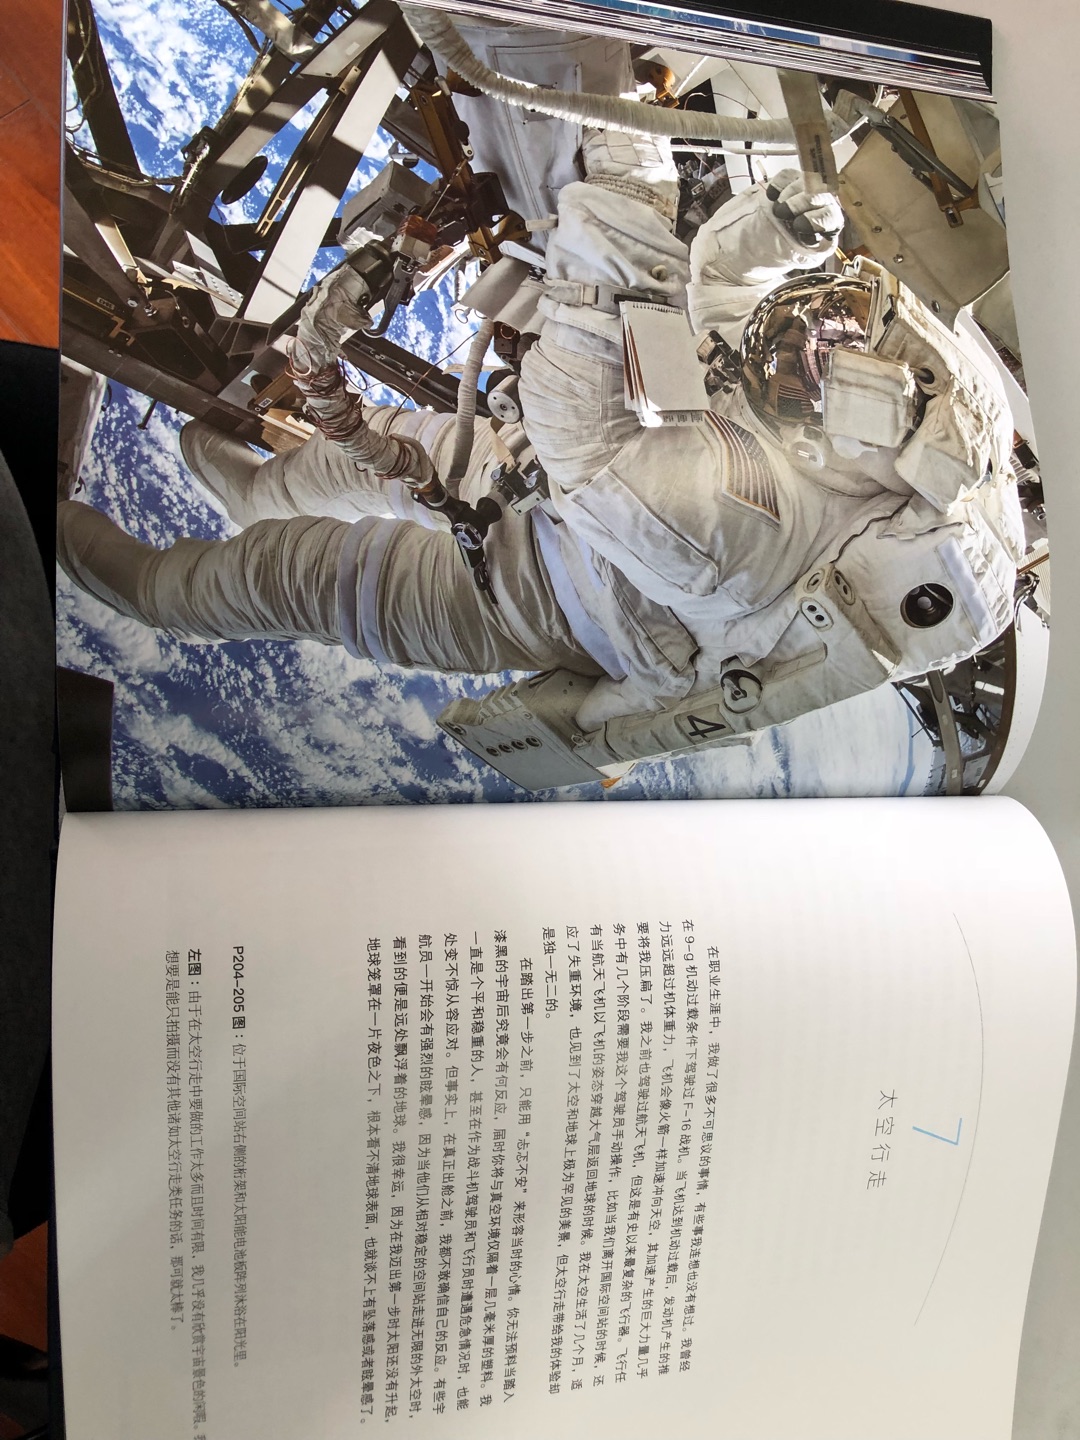 《国家地理太空探索》是一本宇宙自然科普图书，这本书结构清晰严谨，从离开地球、俯瞰地球、太空行走再到返回地球，十分清晰明了。其内容丰富、专业，涉及了宇宙航天知识、自然百科等方面知识；文字与图片相结合，高清拍摄、构图精美；文字生动且通俗易懂，讲述着NASA宇航员特利· 维尔茨执行航天任务期间亲身经历。文章主要讲述了NASA宇航员特利· 维尔茨从出发前的严格训练，出发时激动不已的心情，进入太空中的考验和挑战到返回地球后的不适与调整等经历，让我们对宇航员的训练、日常工作以及心情有了更深一步的了解，也体会到宇航员的艰辛与不易。其中面对即将升空的激动和紧张心情、航空过程中失重体验、勇敢尝试太空行走、昂贵且不易的物品运输、回到地球后的不适等内容令我印象深刻，为我们揭秘了神秘的太空并分享了精彩的经历，带领我们一次欣赏的体现。除此之外，图书配以精美高清的实拍图，让我们可以身临其境，一同探索神秘的太空。我们可以看到日常中看不到的地球的另一面，如亮红色的沙漠、巴哈马海岸的湖蓝色海水、台风“美莎克”的台风眼、北极光以及粒子风暴、太阳和月亮升起的画面等各种奇幻瑰丽的太空照片，一览宇宙的浩瀚与壮观